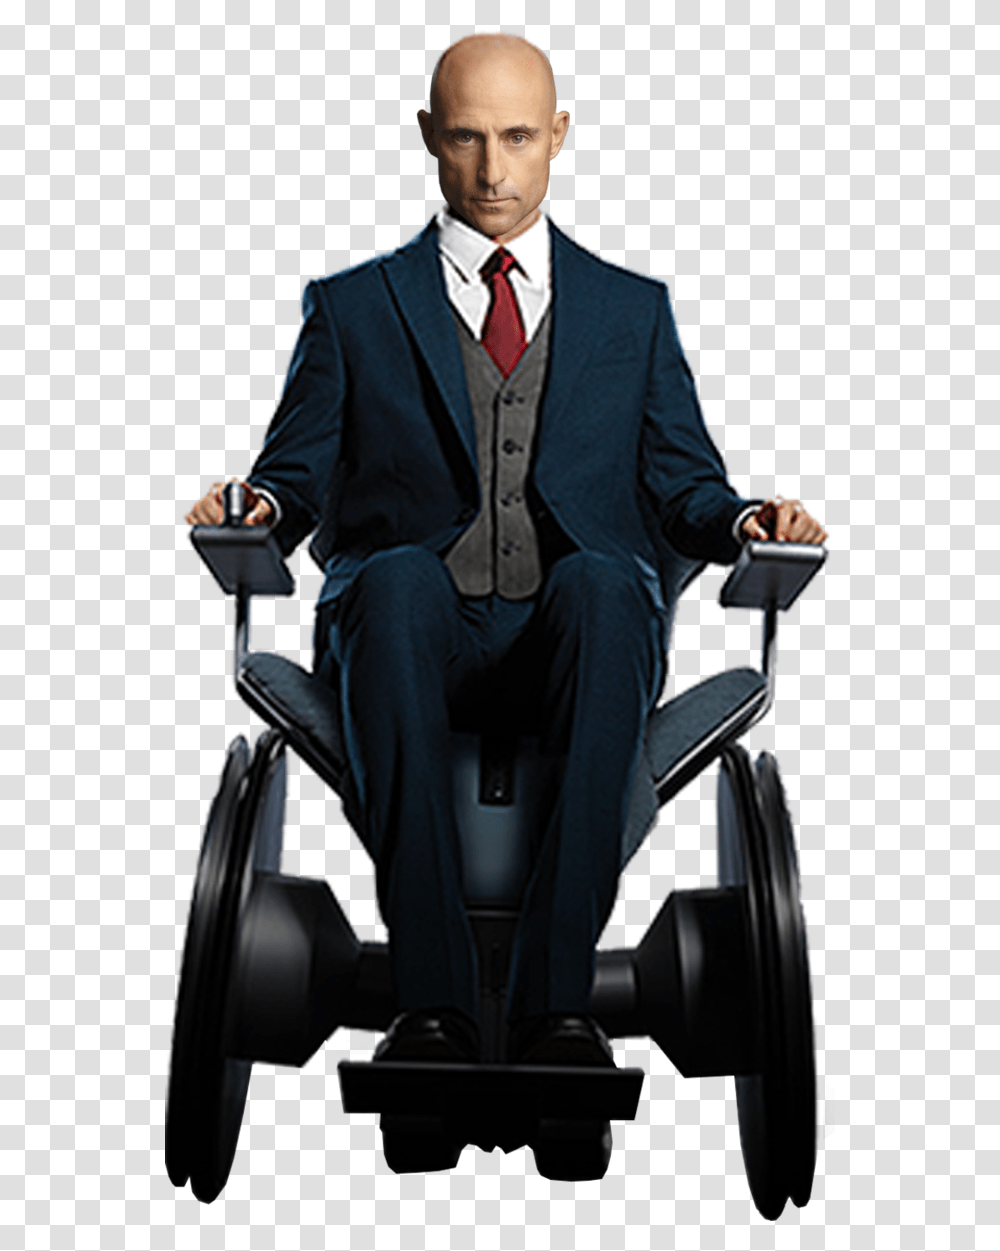 Xmen Drawing Professor X Men Professor X, Chair, Furniture, Suit, Overcoat Transparent Png